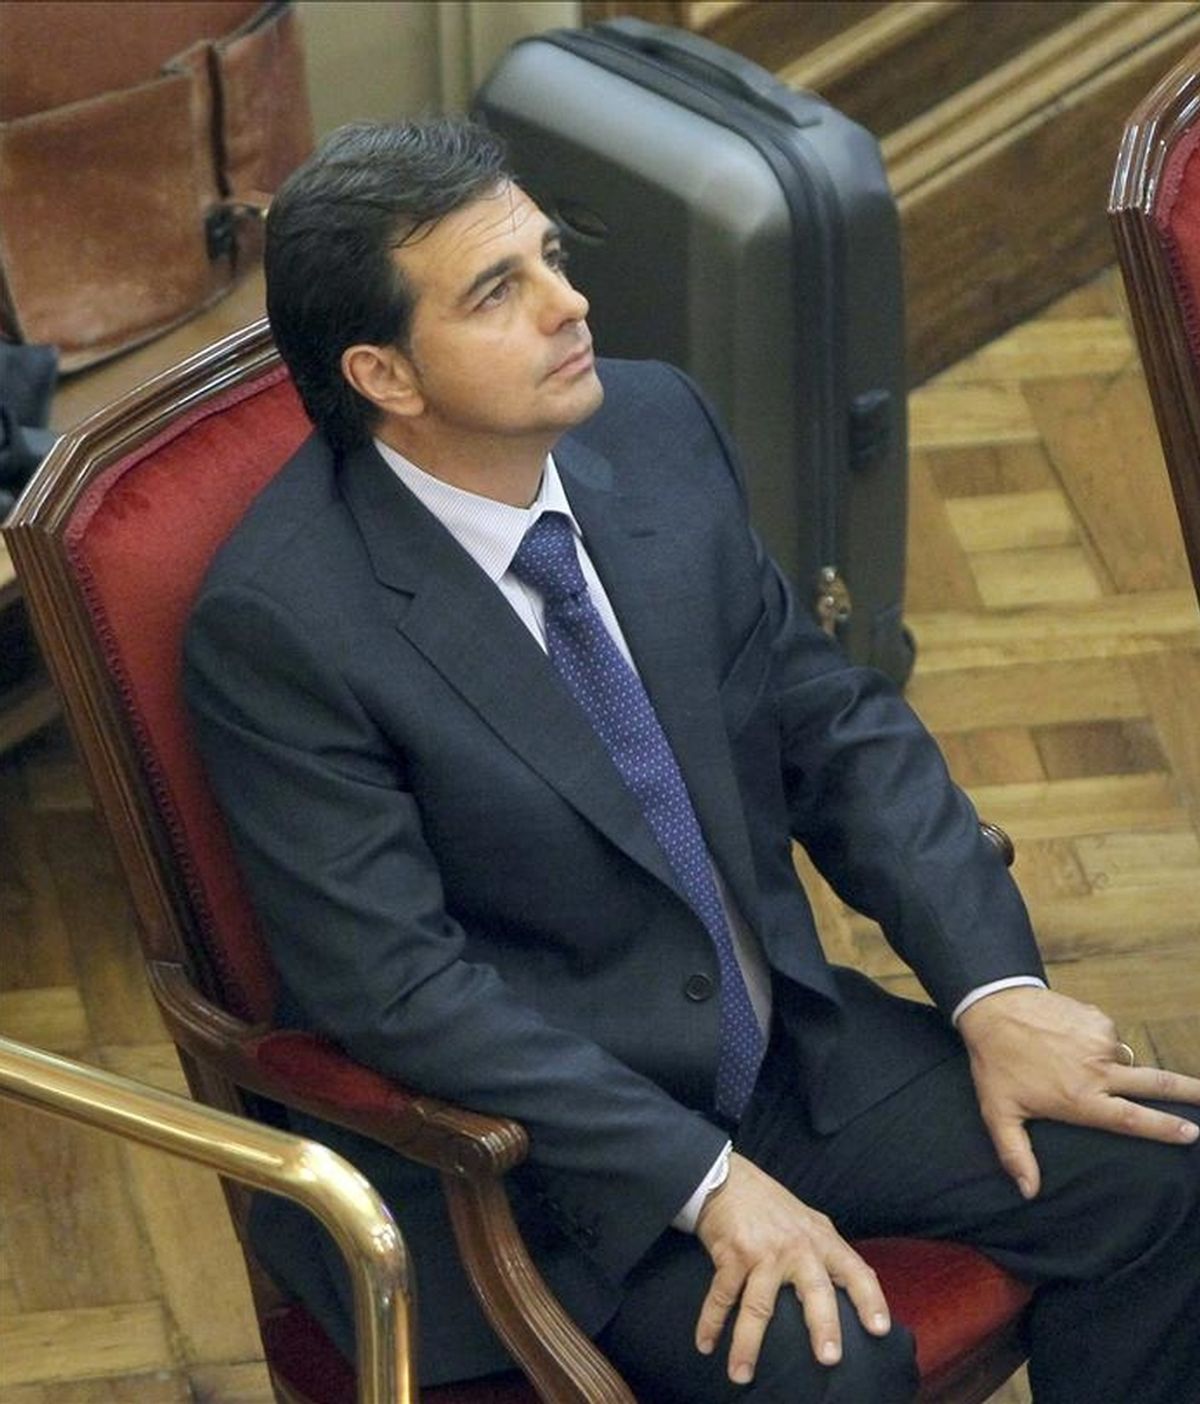 El yerno y jefe de seguridad de los joyeros Tous, Lluís Corominas, acusado de matar a un presunto ladrón, en la silla de los acusados de la Audiencia de Barcelona. EFE